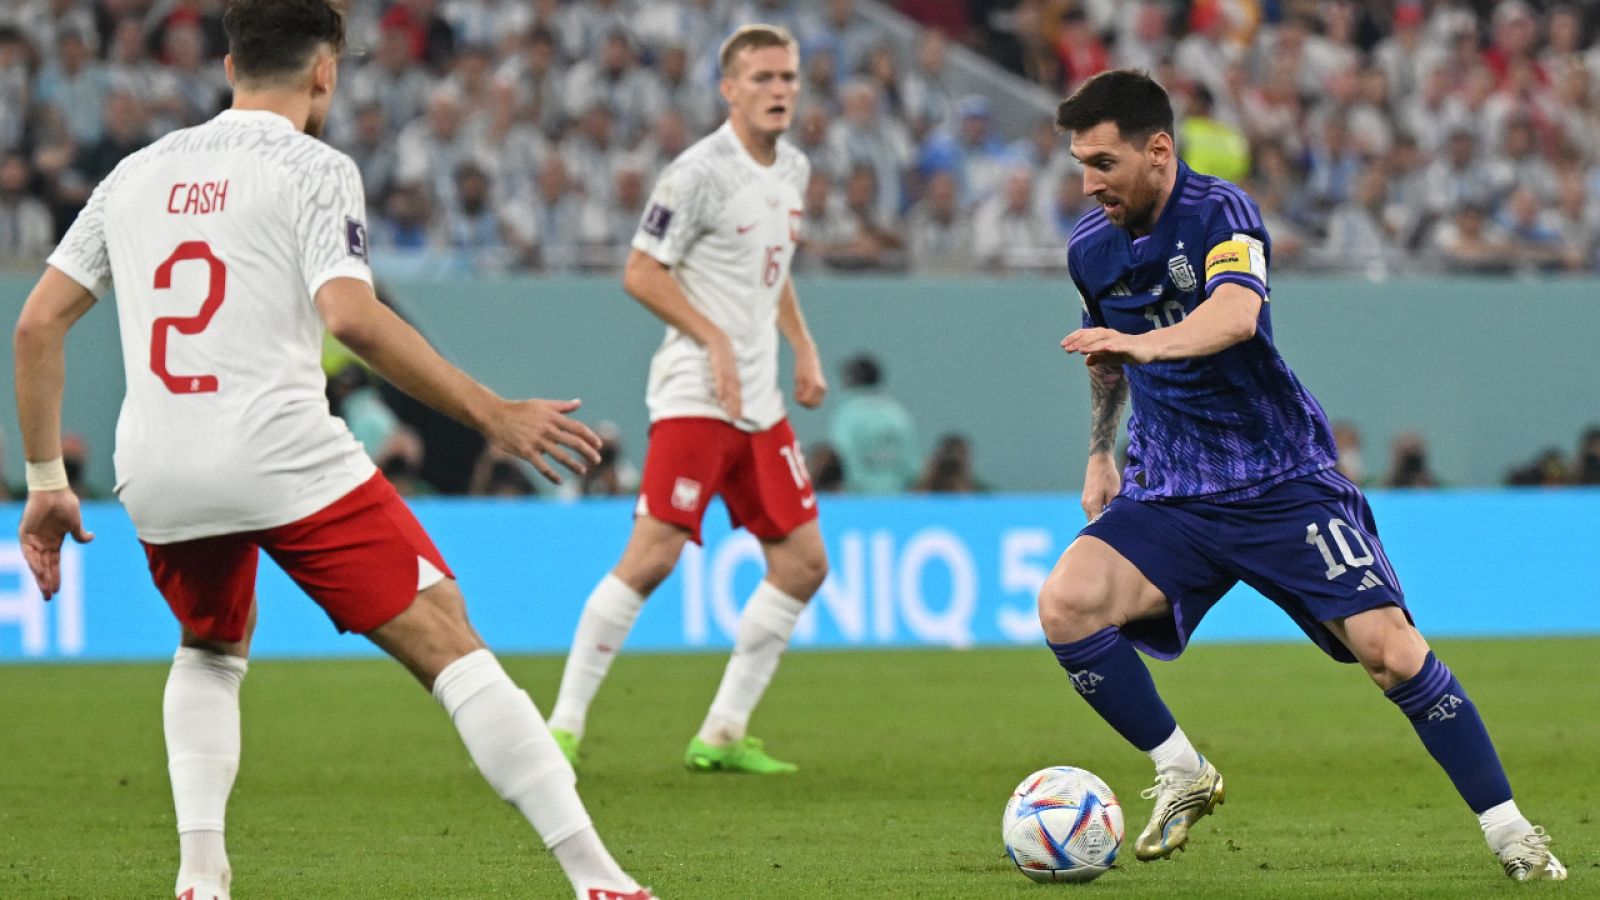 Polonia - Argentina en directo | Mundial Qatar 2022 en vivo